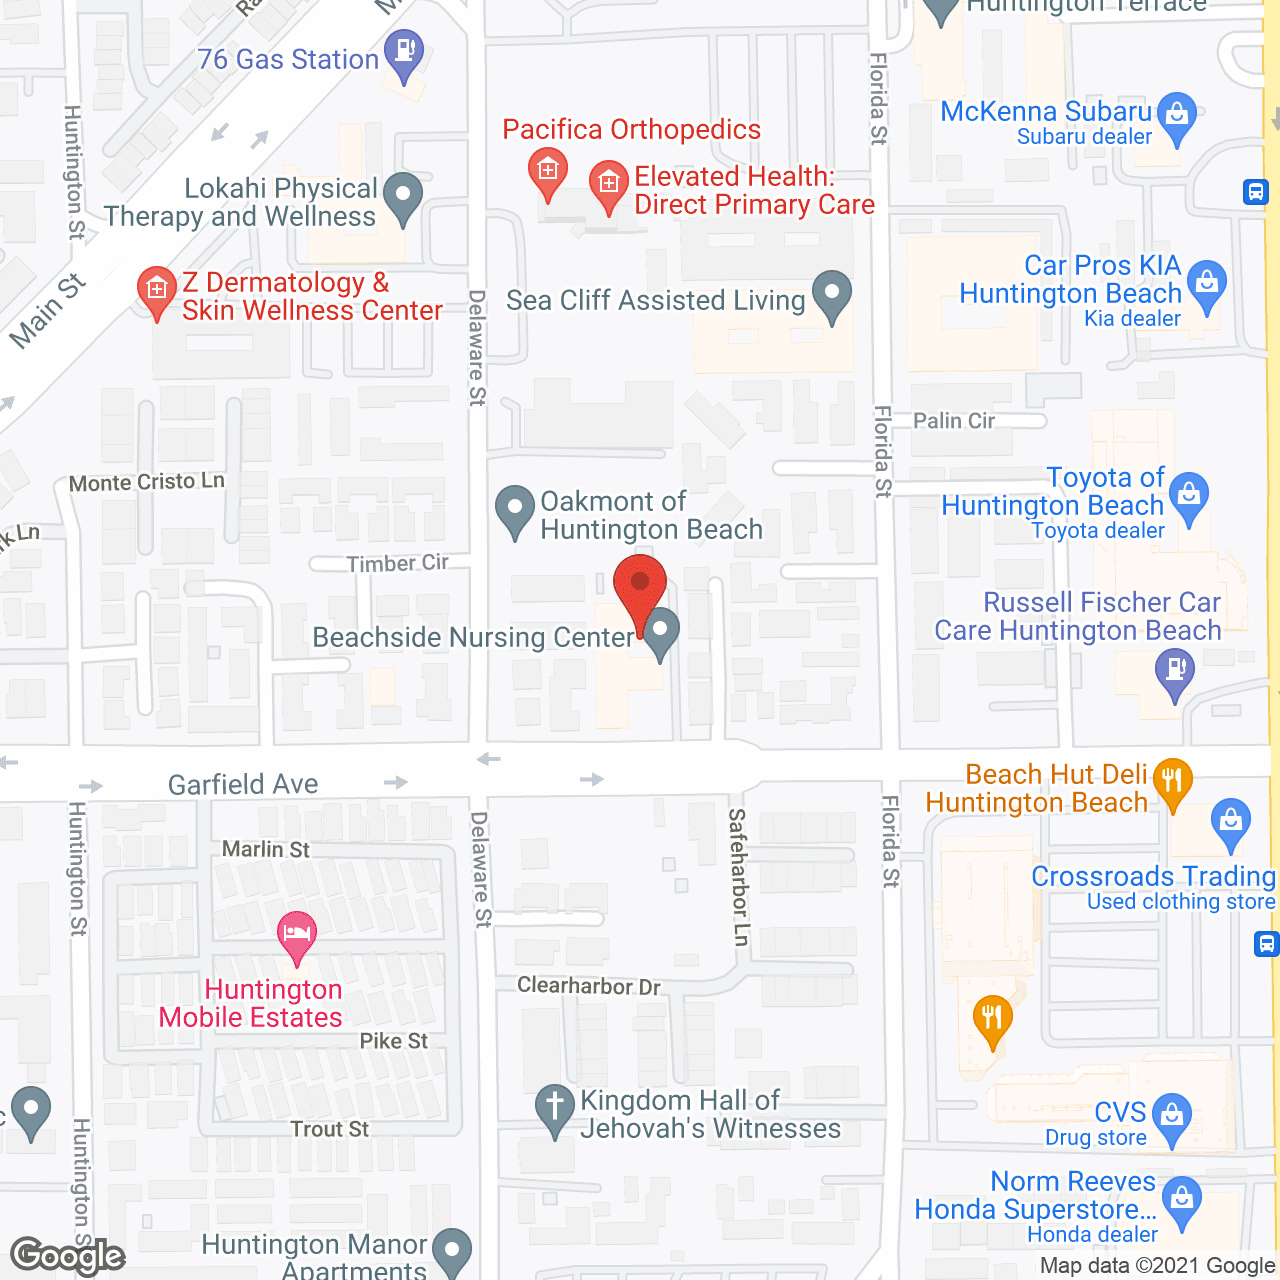 Beachside Nursing Center in google map